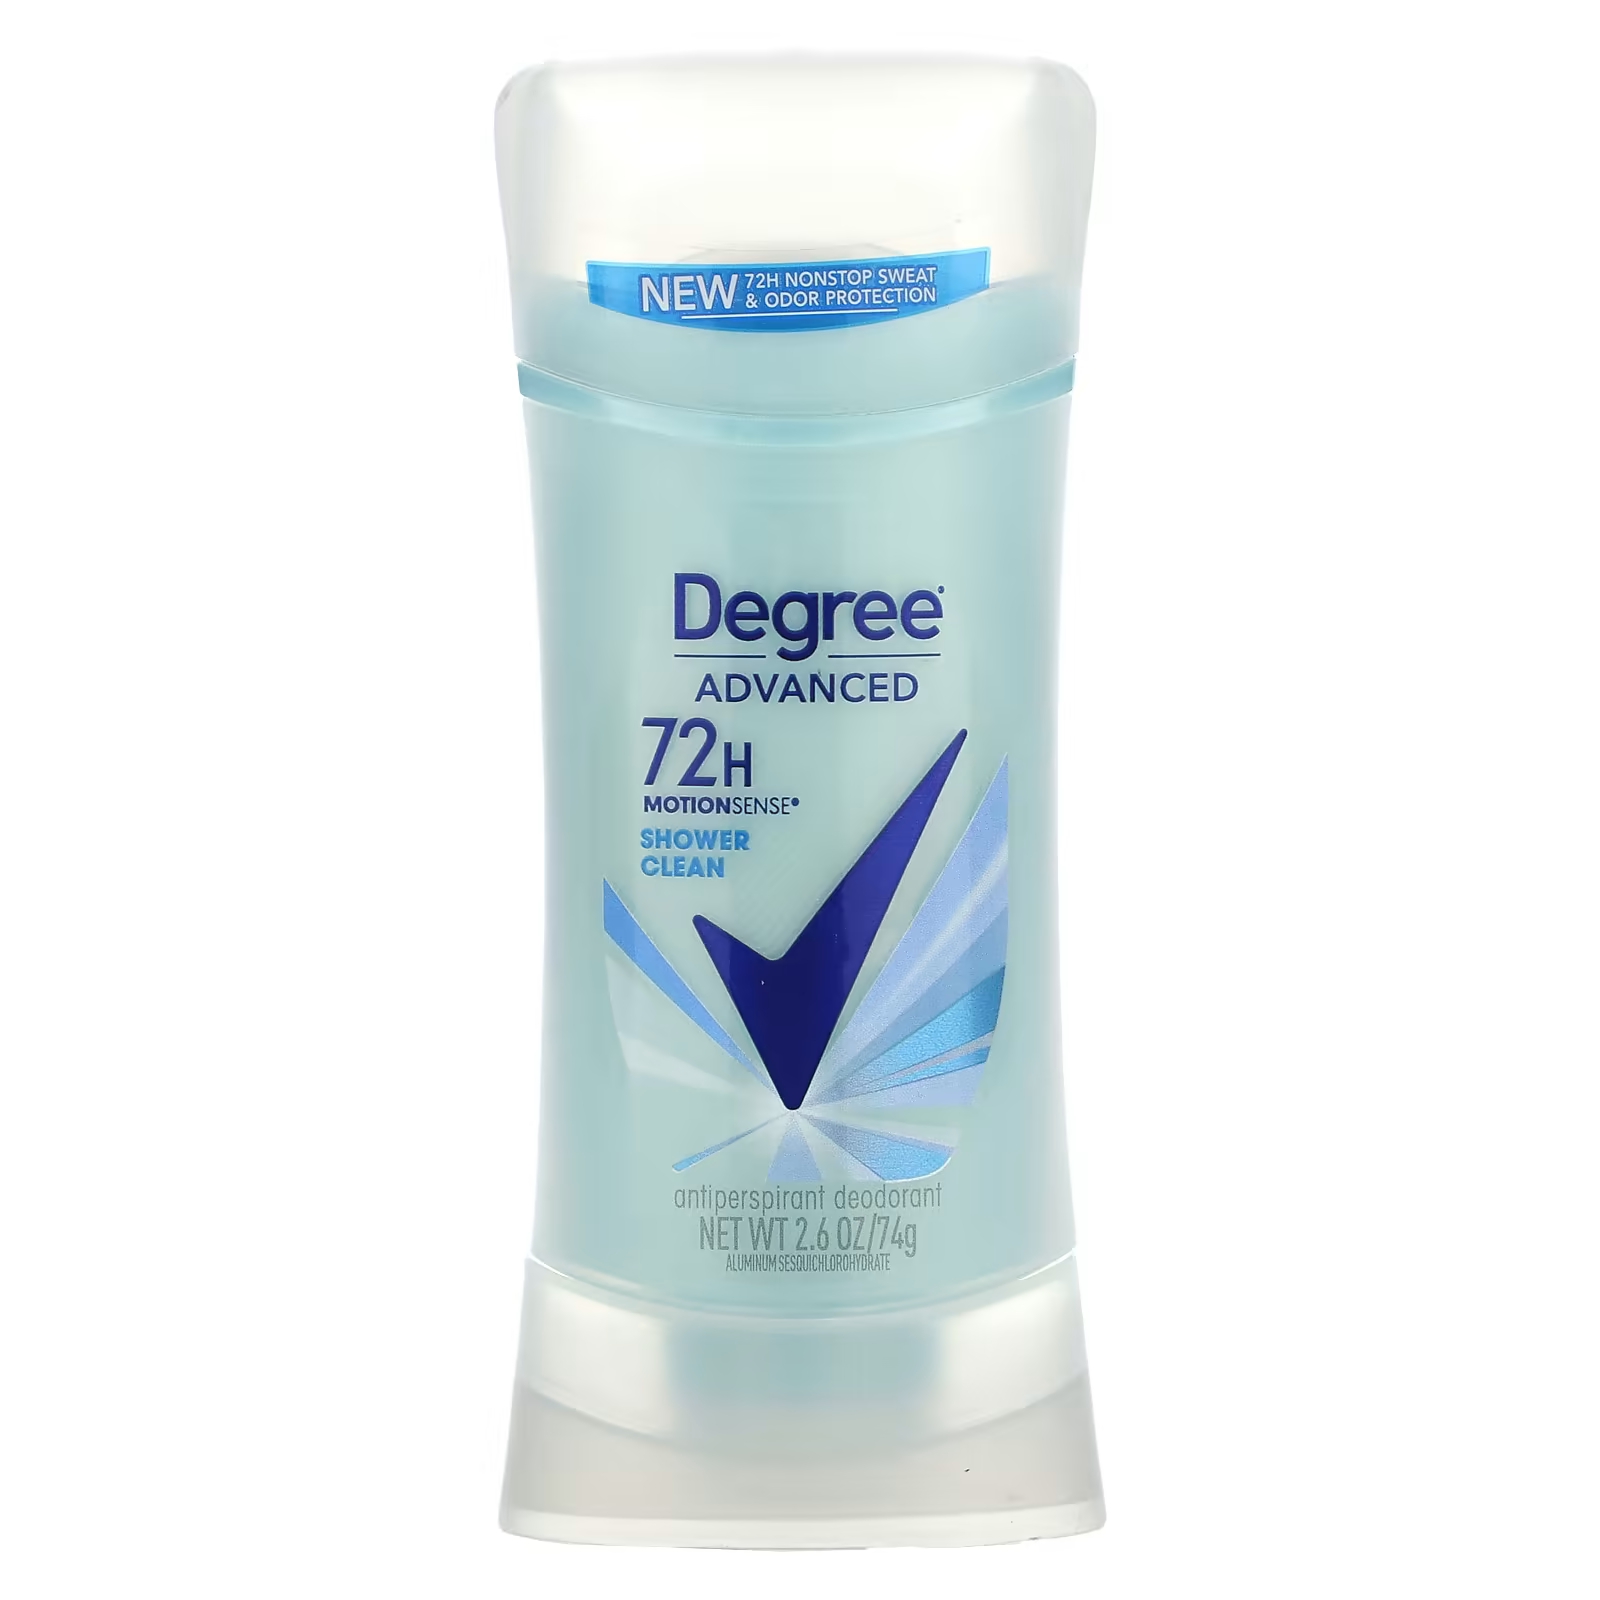 Дезодорант-антиперспирант Degree Advanced 72H MotionSense для очистки degree дезодорант антиперспирант очищение для душа 74 г 2 6 унции